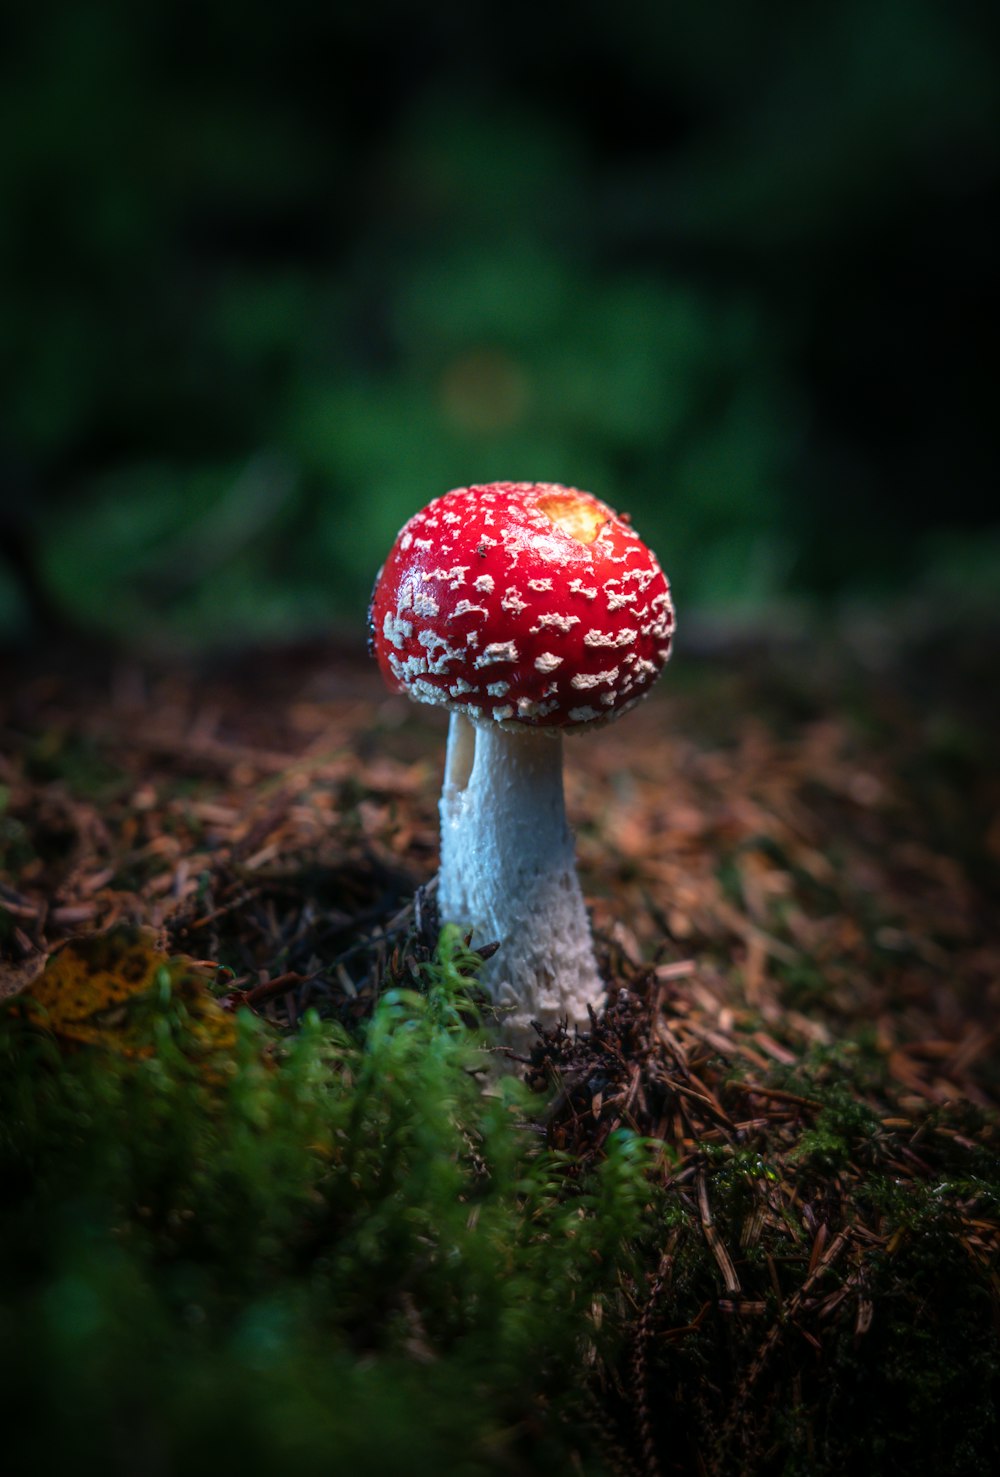 a mushroom growing in moss